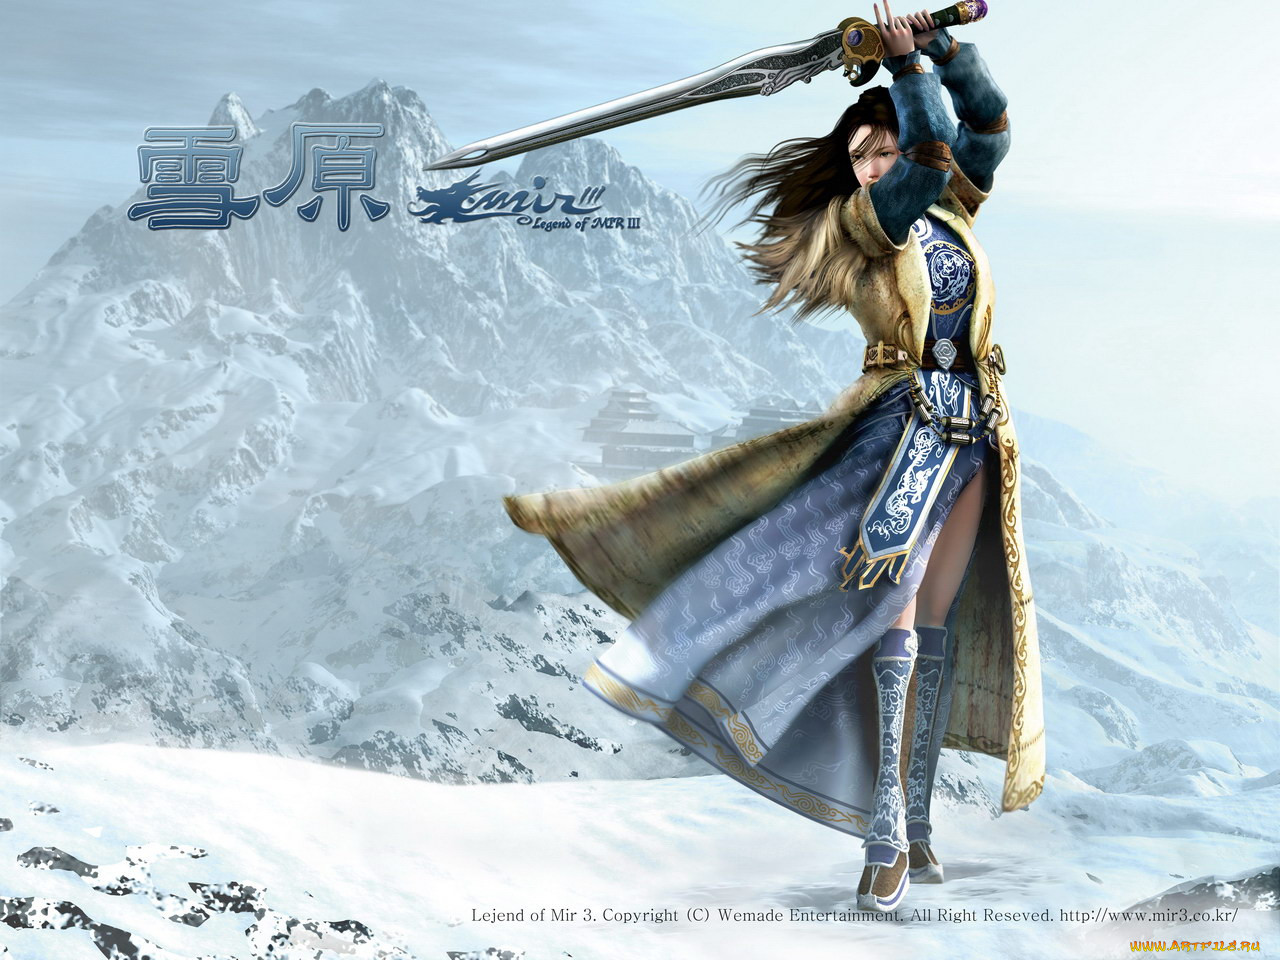 Video mir. Девушка воин в горах. Девушка воин зимой. Замахивается мечом. Девушка зимой с мечом арт.